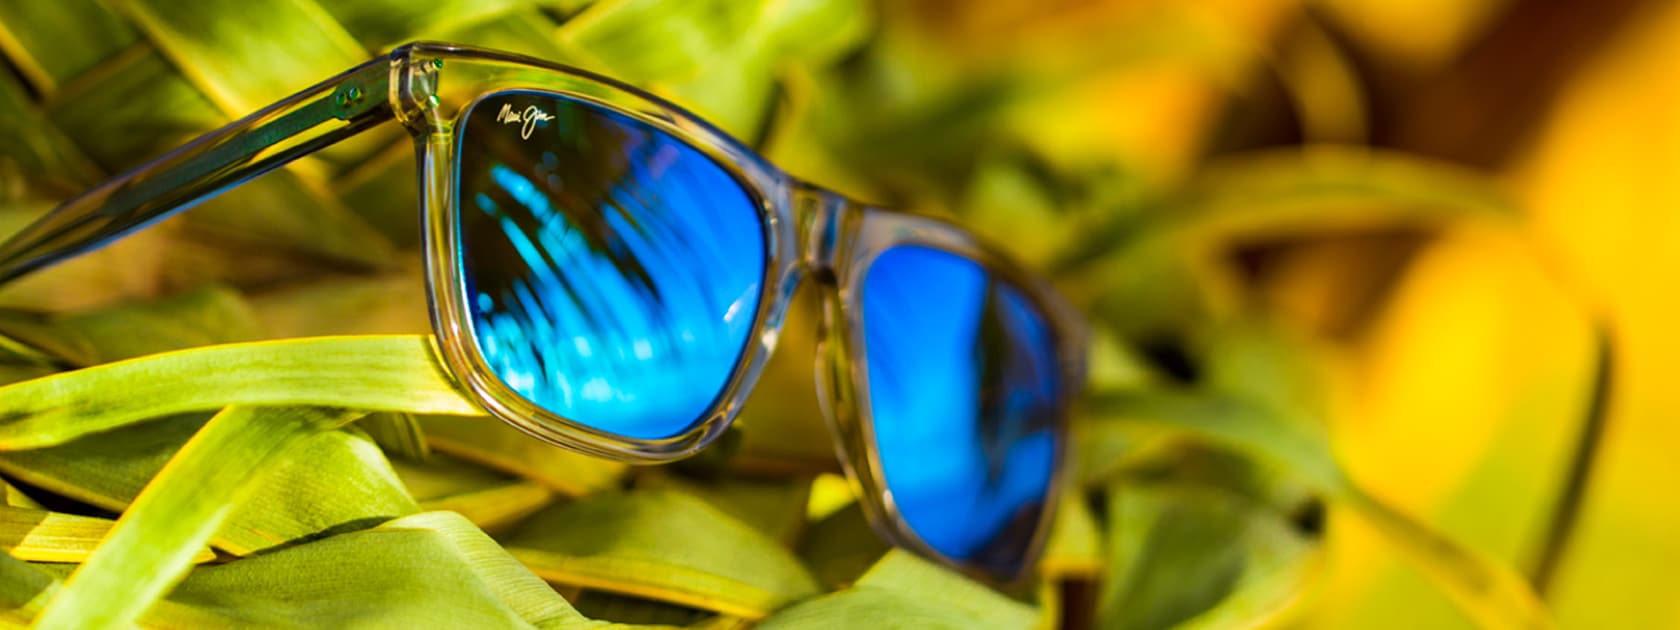 Sonnenbrille mit transparenter Fassung und blauen Gläsern auf grünen Palmwedeln